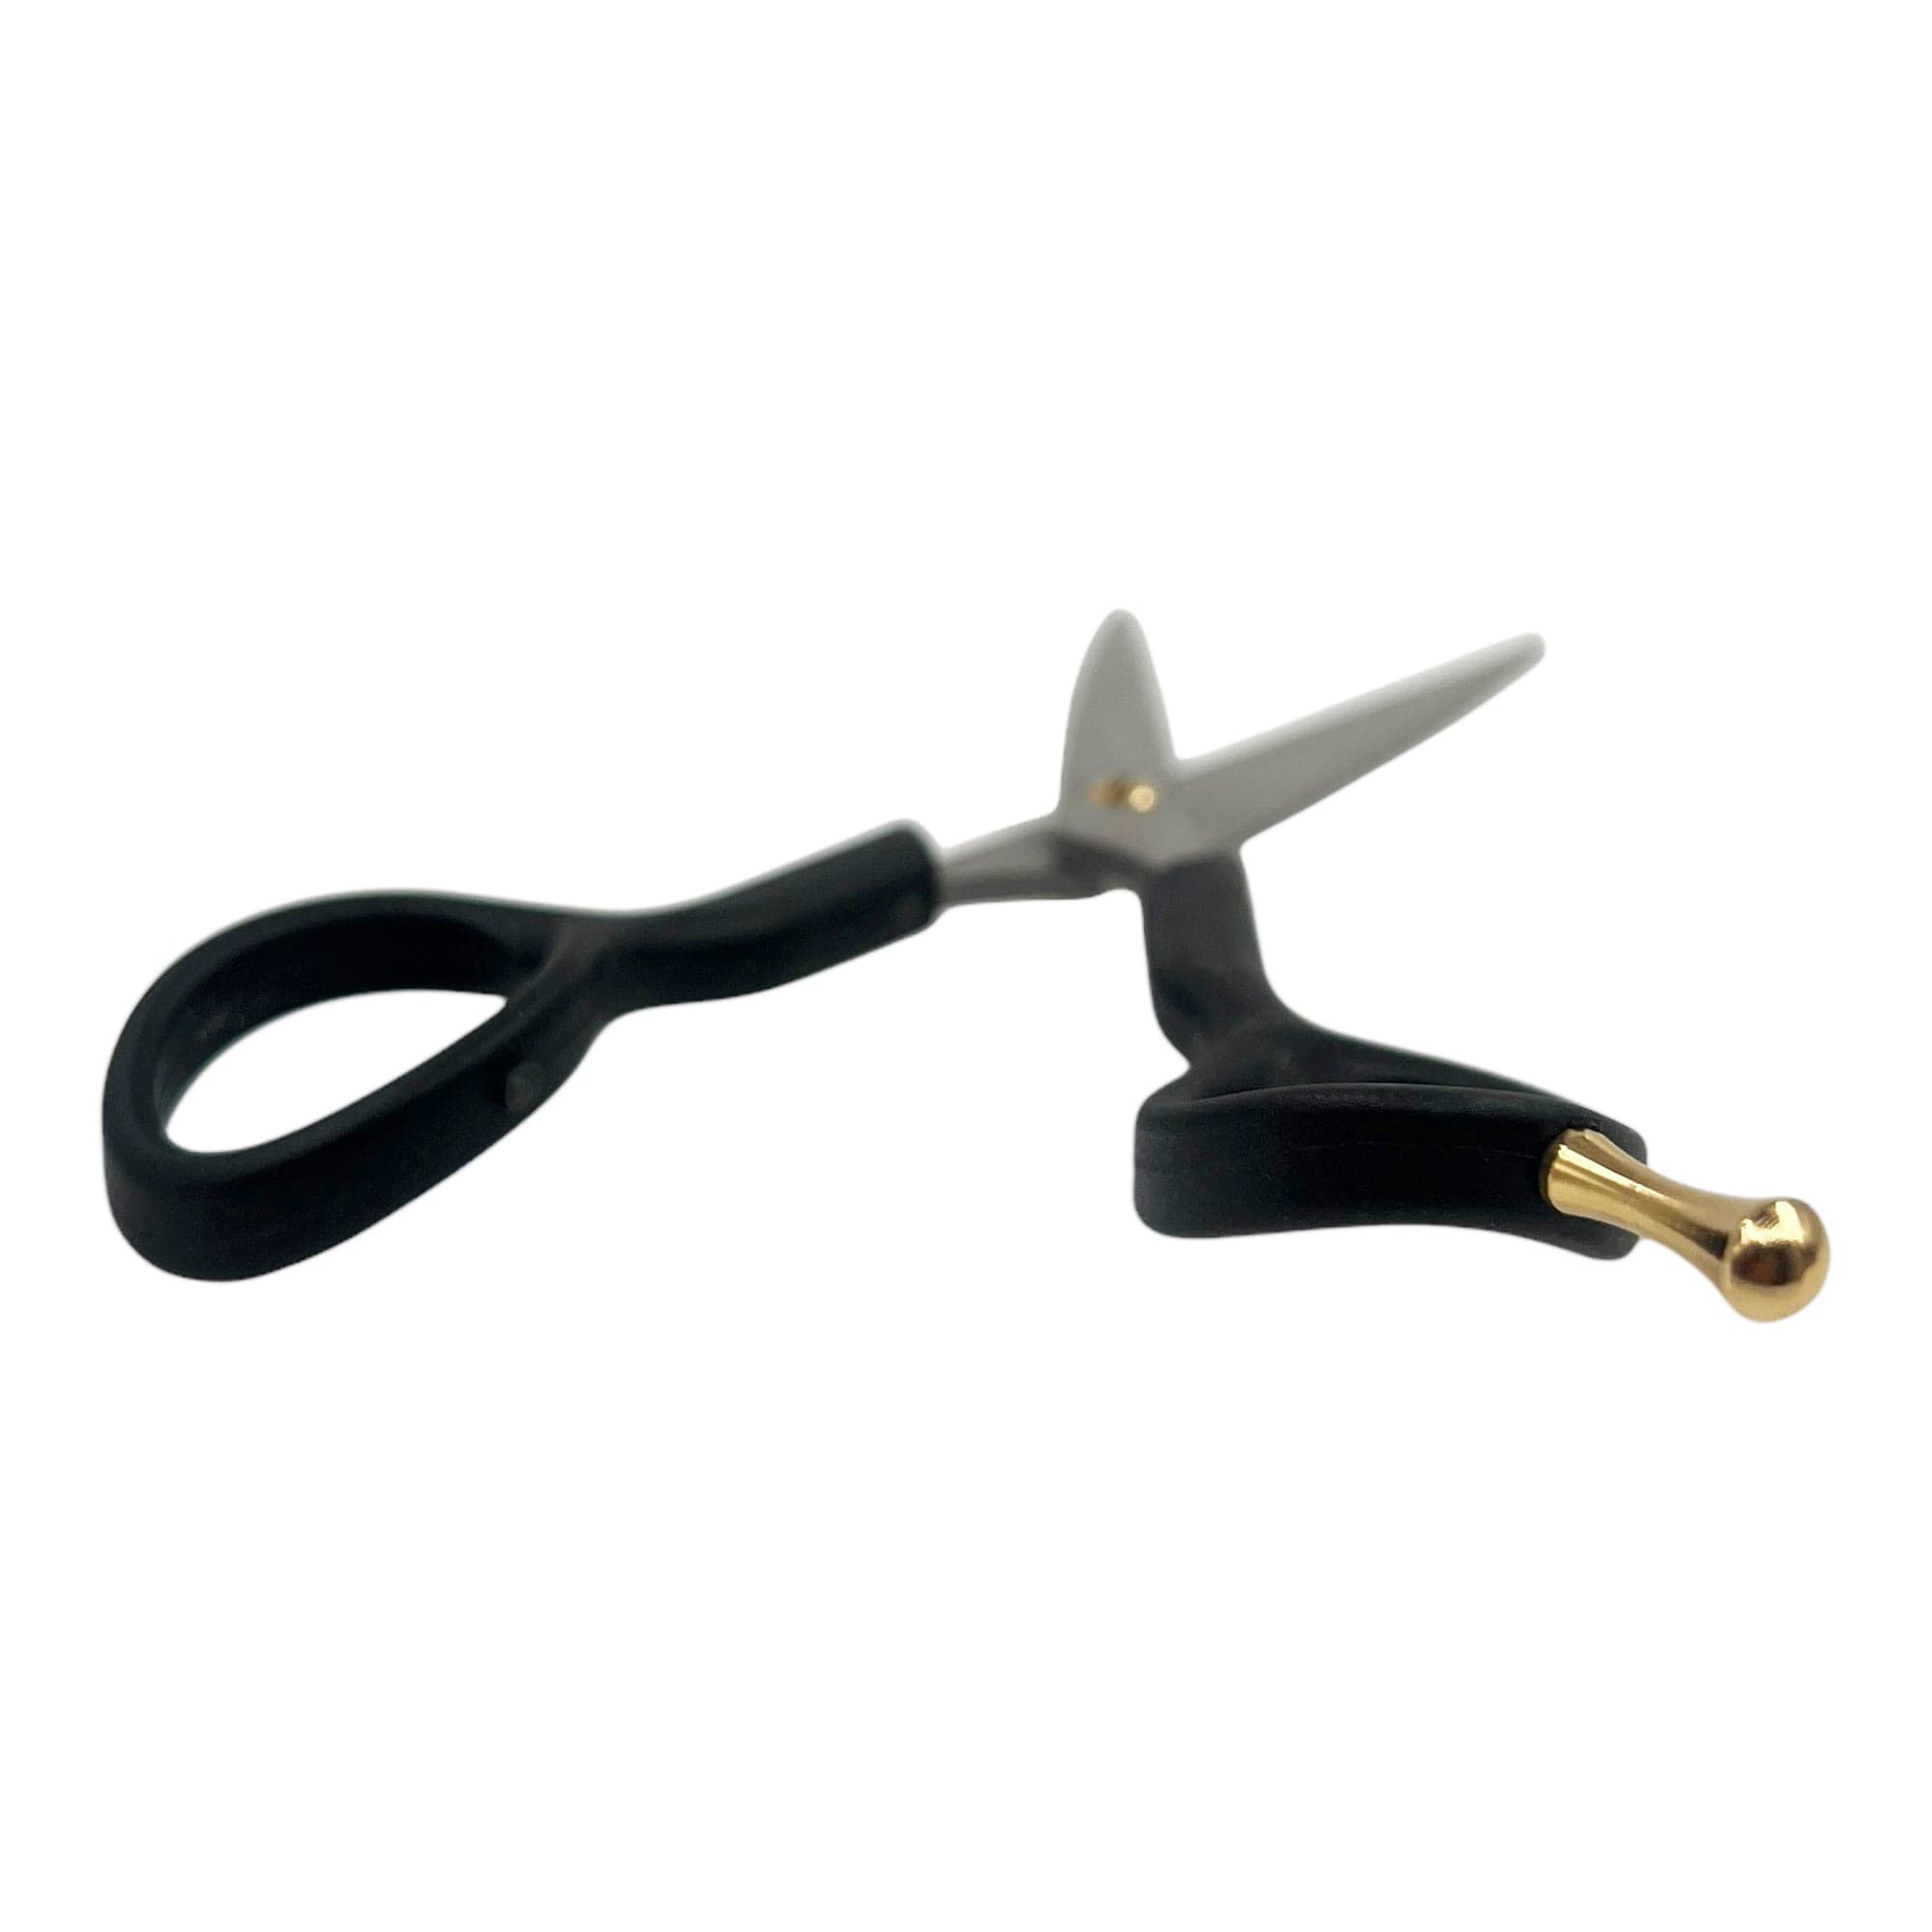 Kiepe - 2312 Academy Scissor 6.5 Inch (17cm)